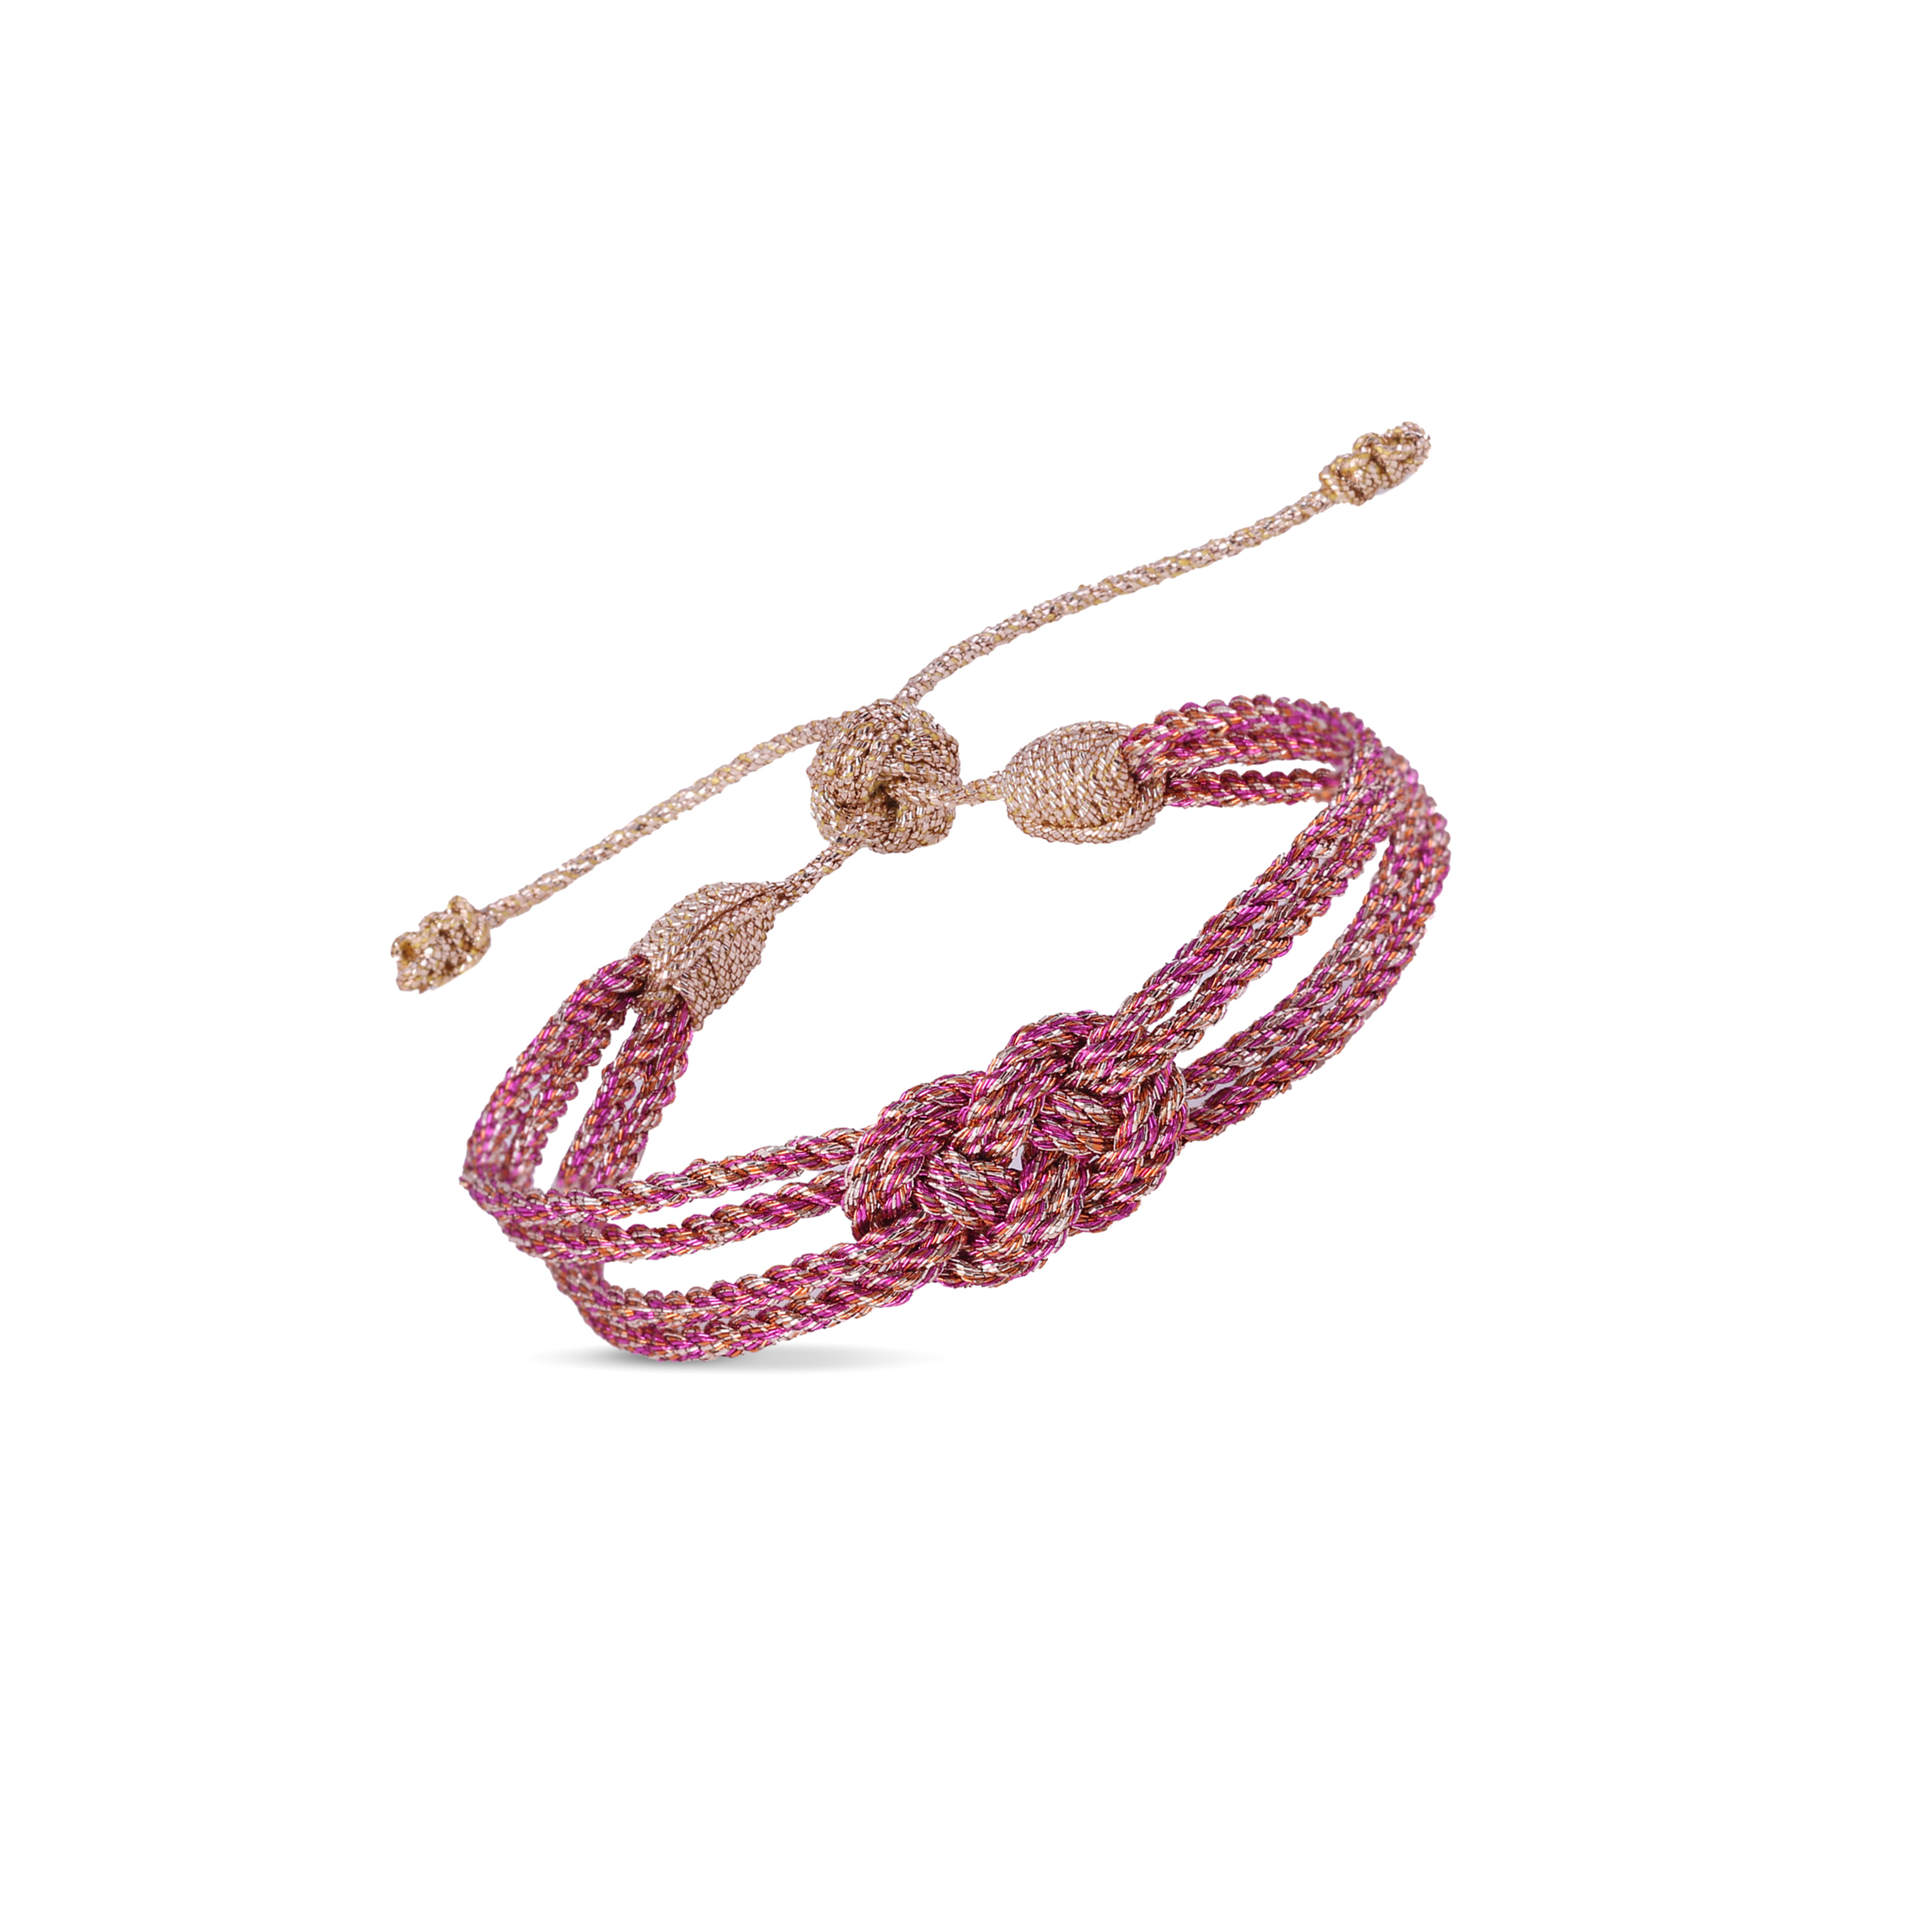 Knot n°1 Bracelet in Rose Gold Pink